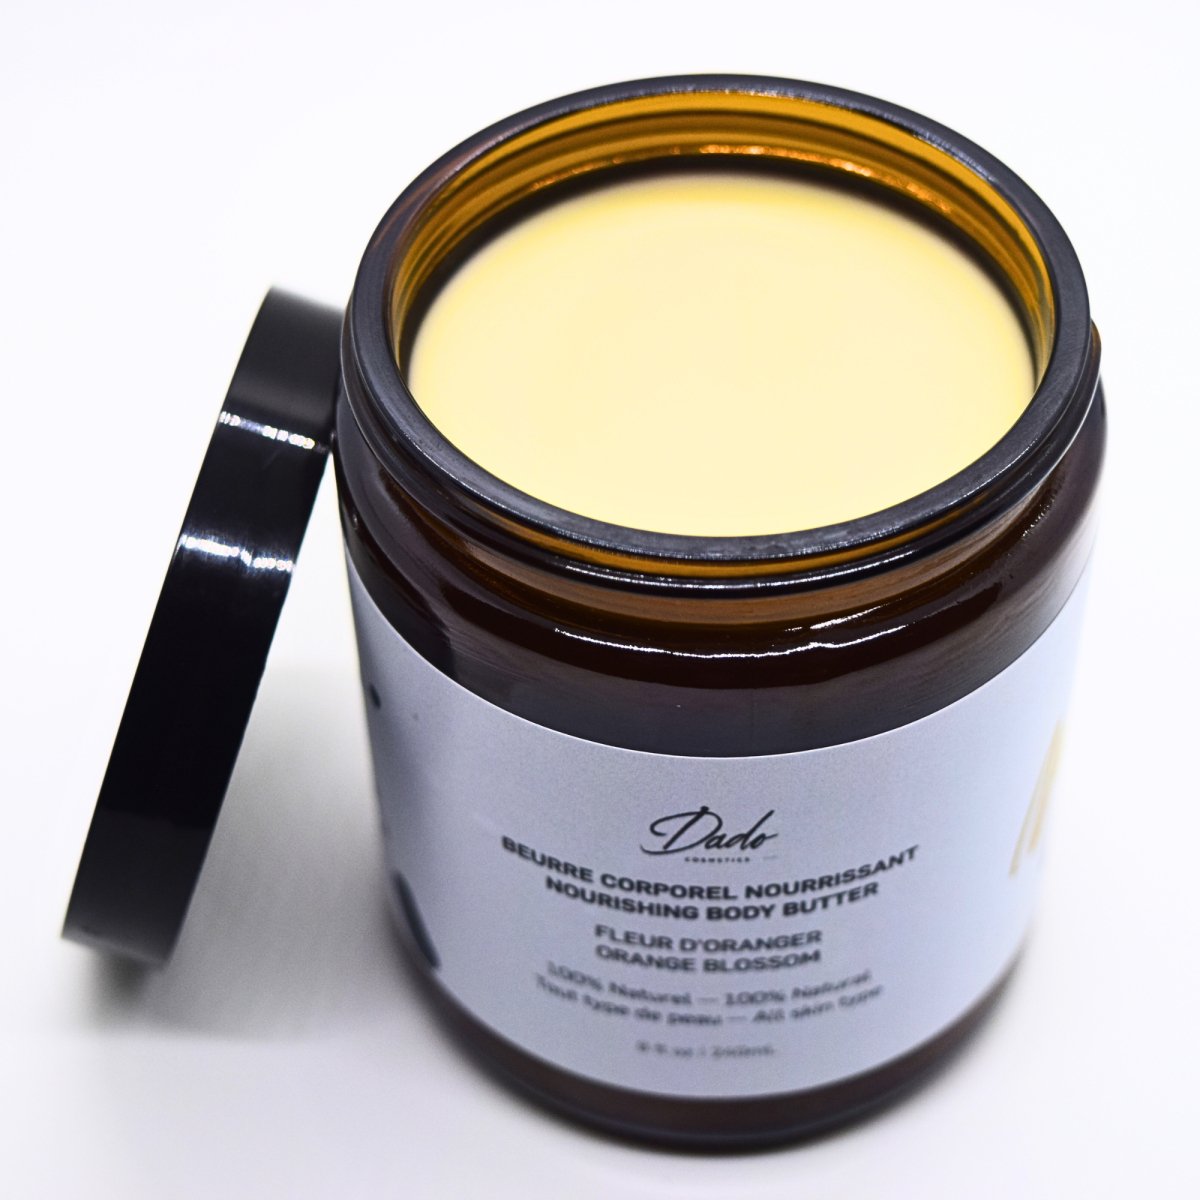 Beurre corporel au karité Fleur d'oranger - 240ml - Dado Cosmetics